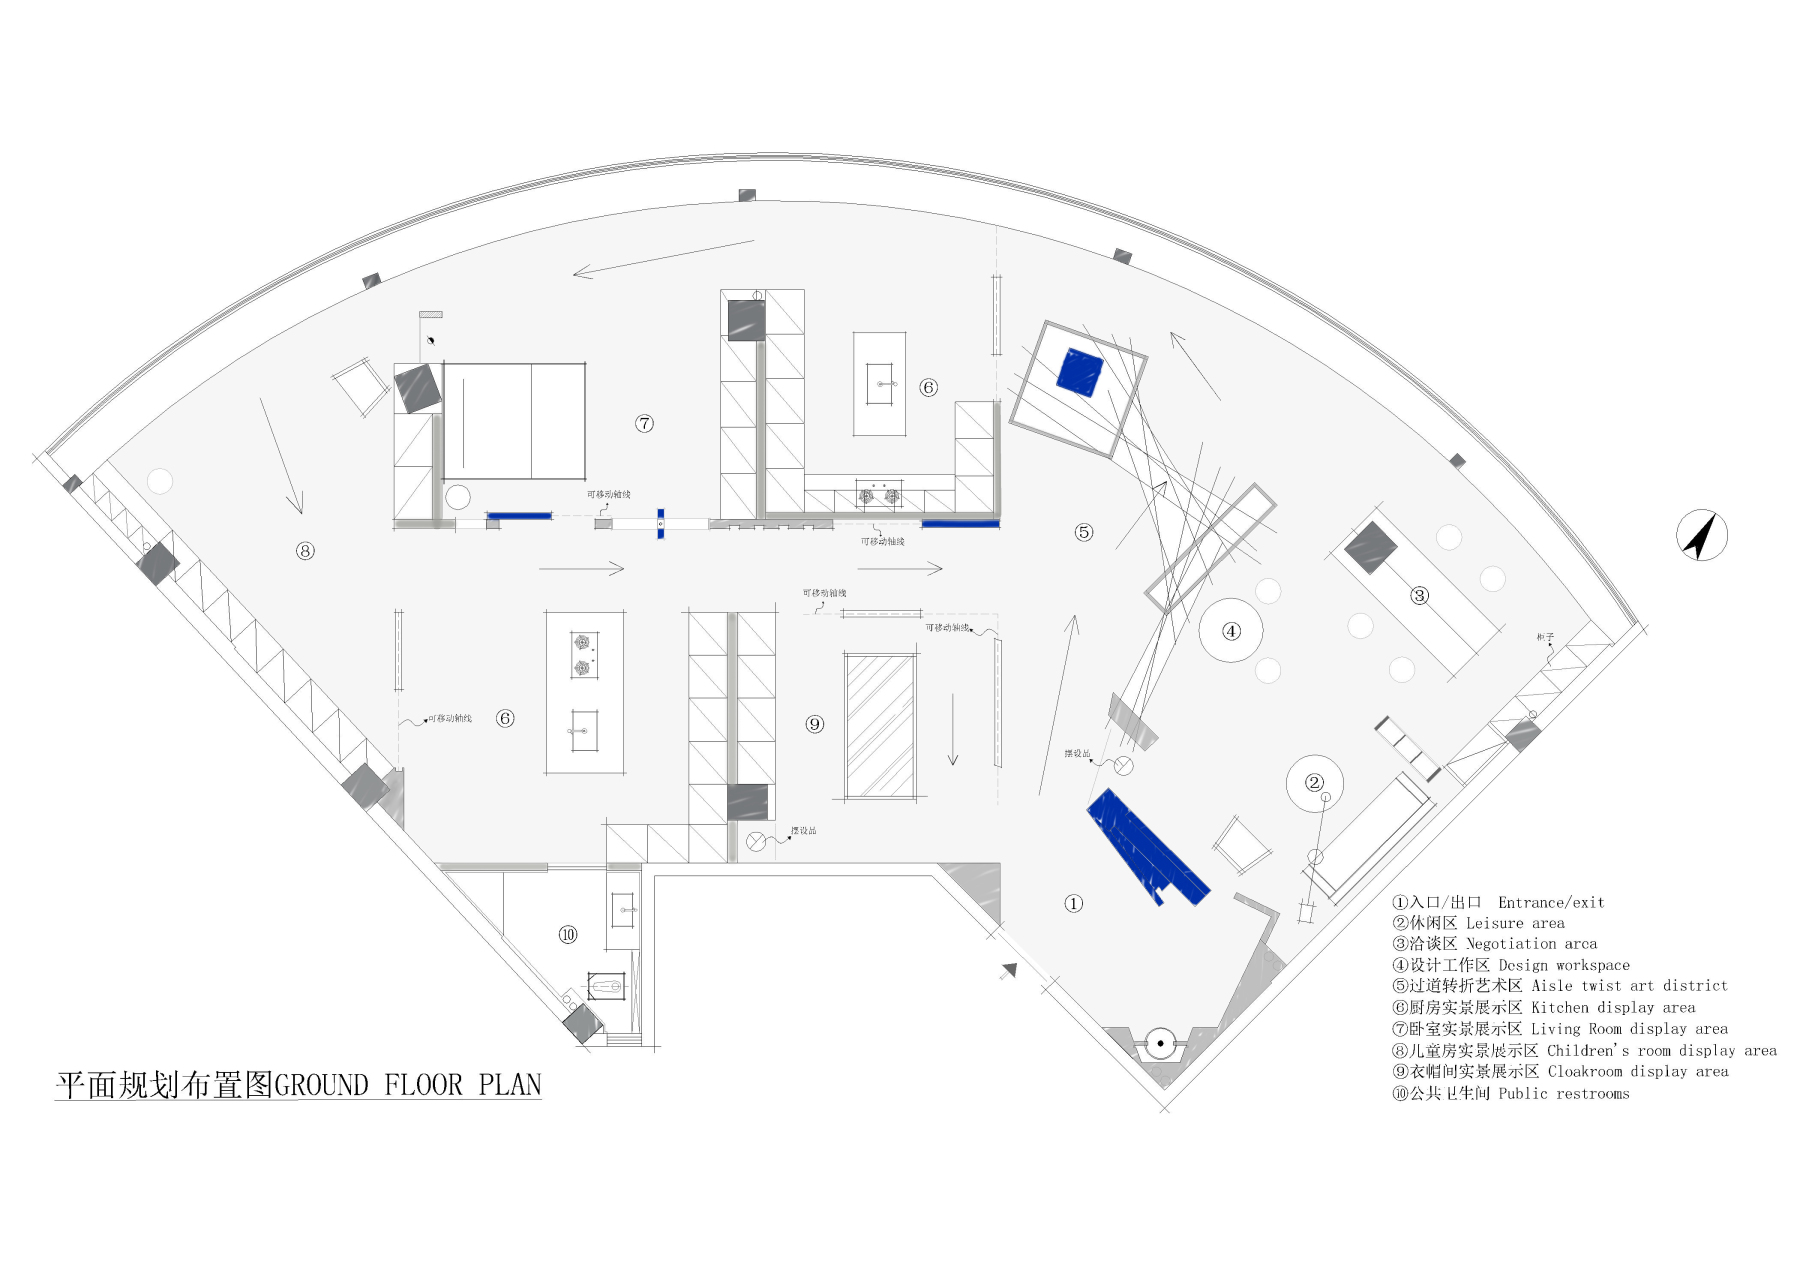 展厅平面规划布置图.jpg